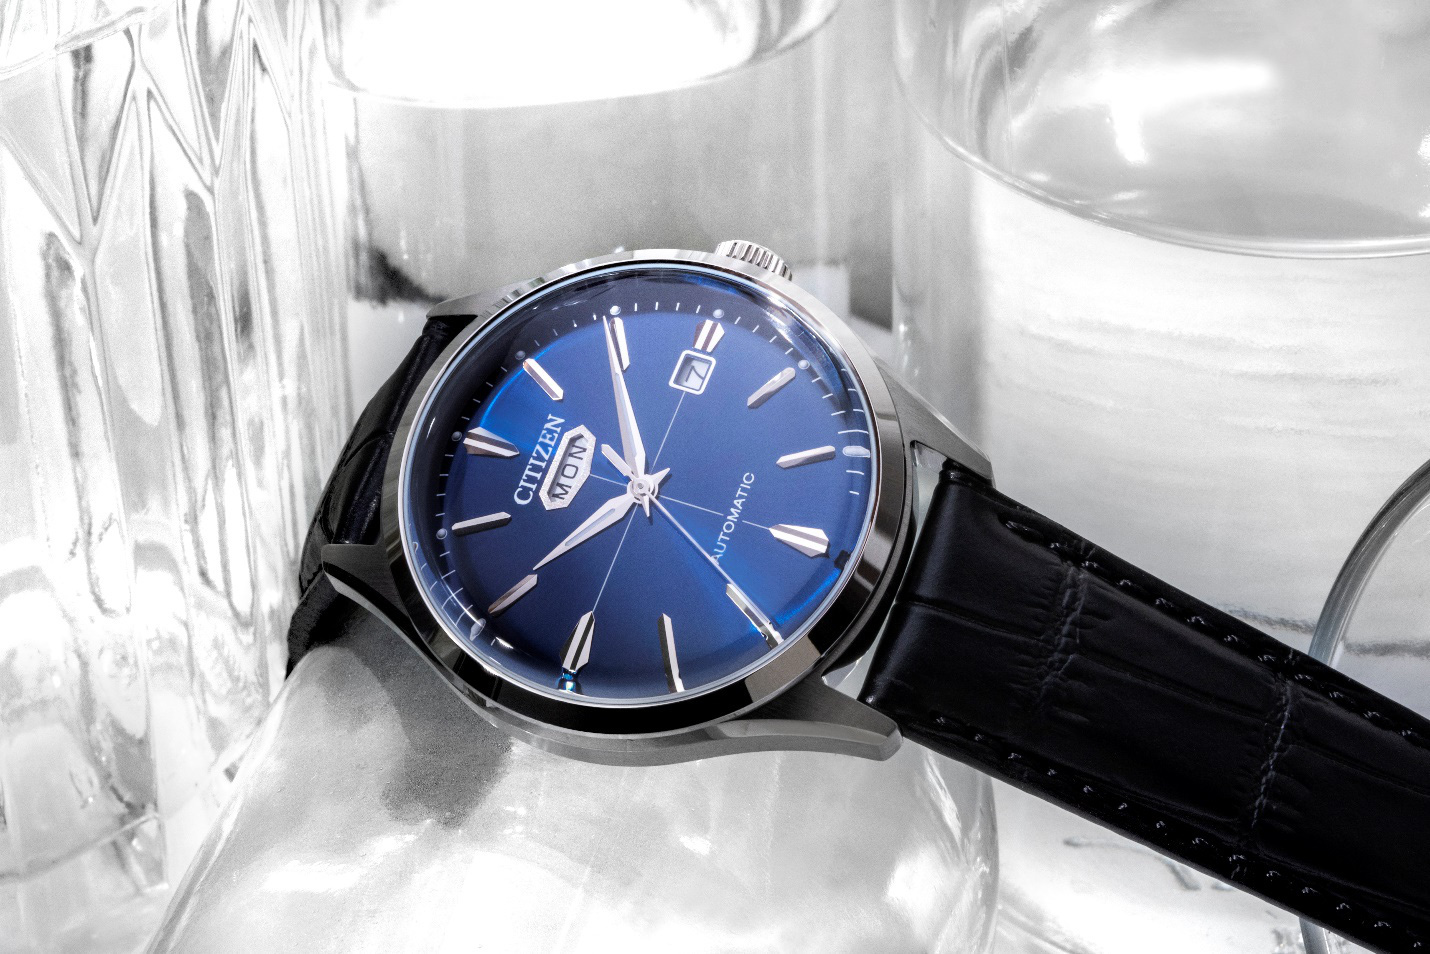 Citizen ra mắt đồng hồ C7 Automatic dịp năm mới cùng fashionista Châu Bùi - Ảnh 3.